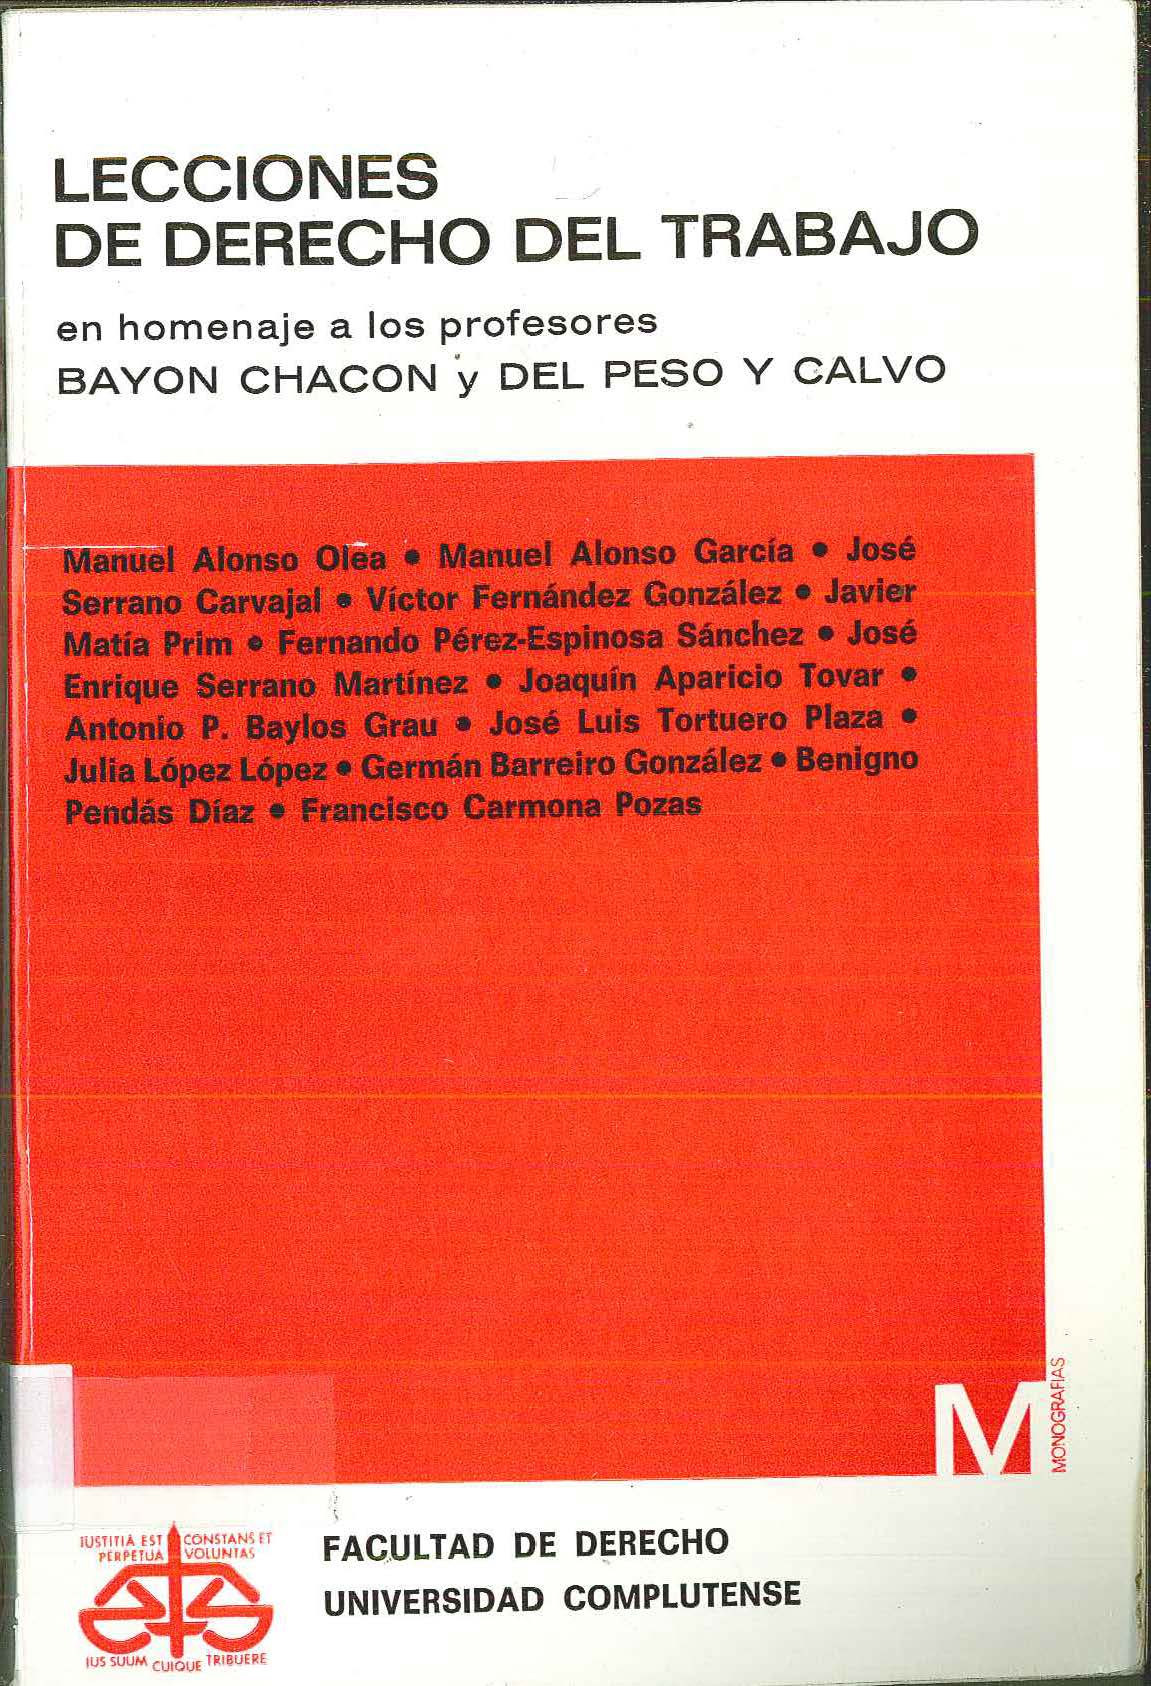 Imagen de portada del libro Lecciones del derecho del trabajo en homenaje a los profesores Bayón Chacón y del Peso y Calvo